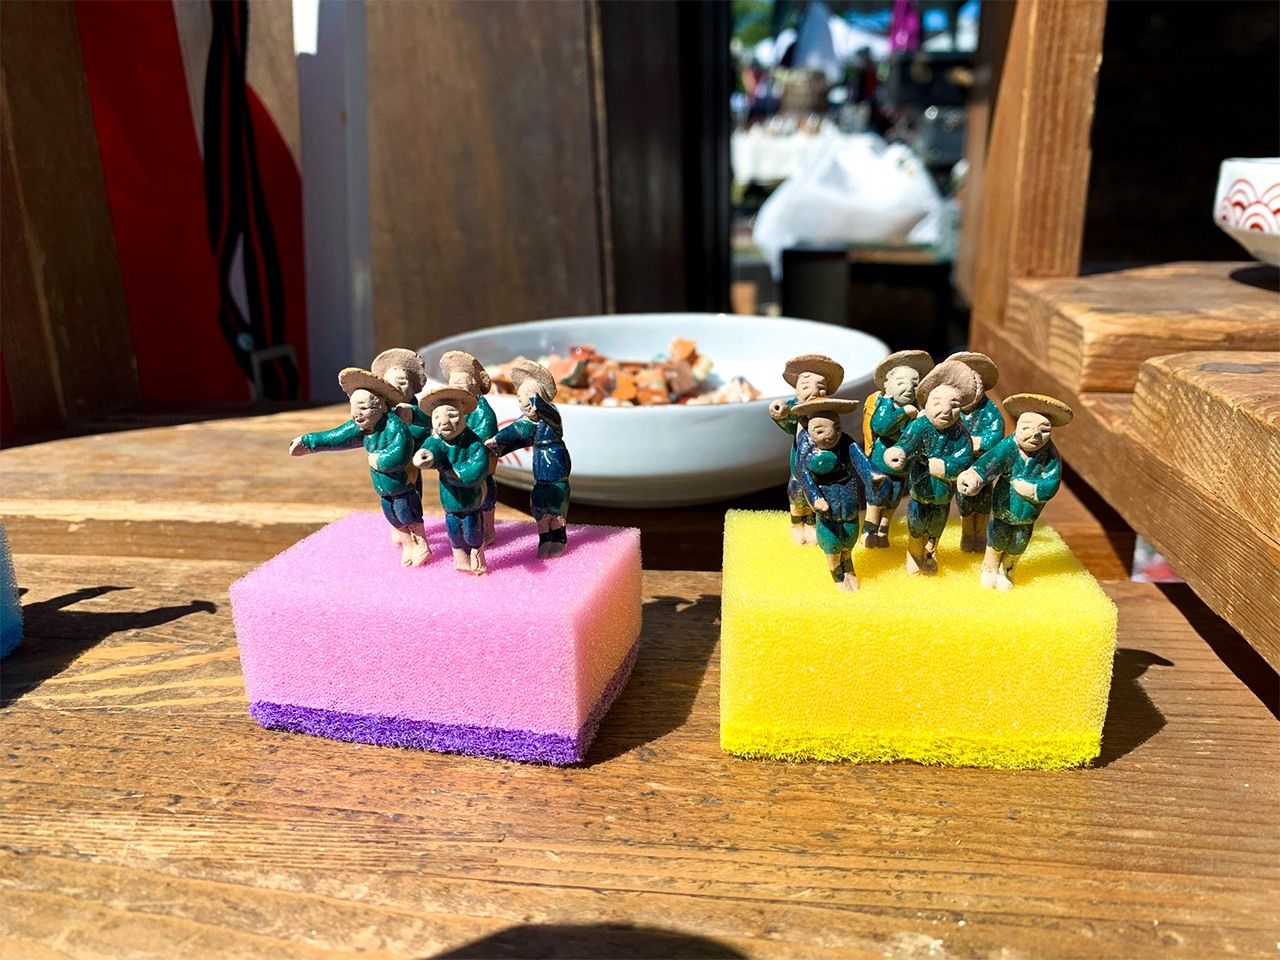 在丰国神社的小玩意儿市集上，常常能看到许多可爱的东西